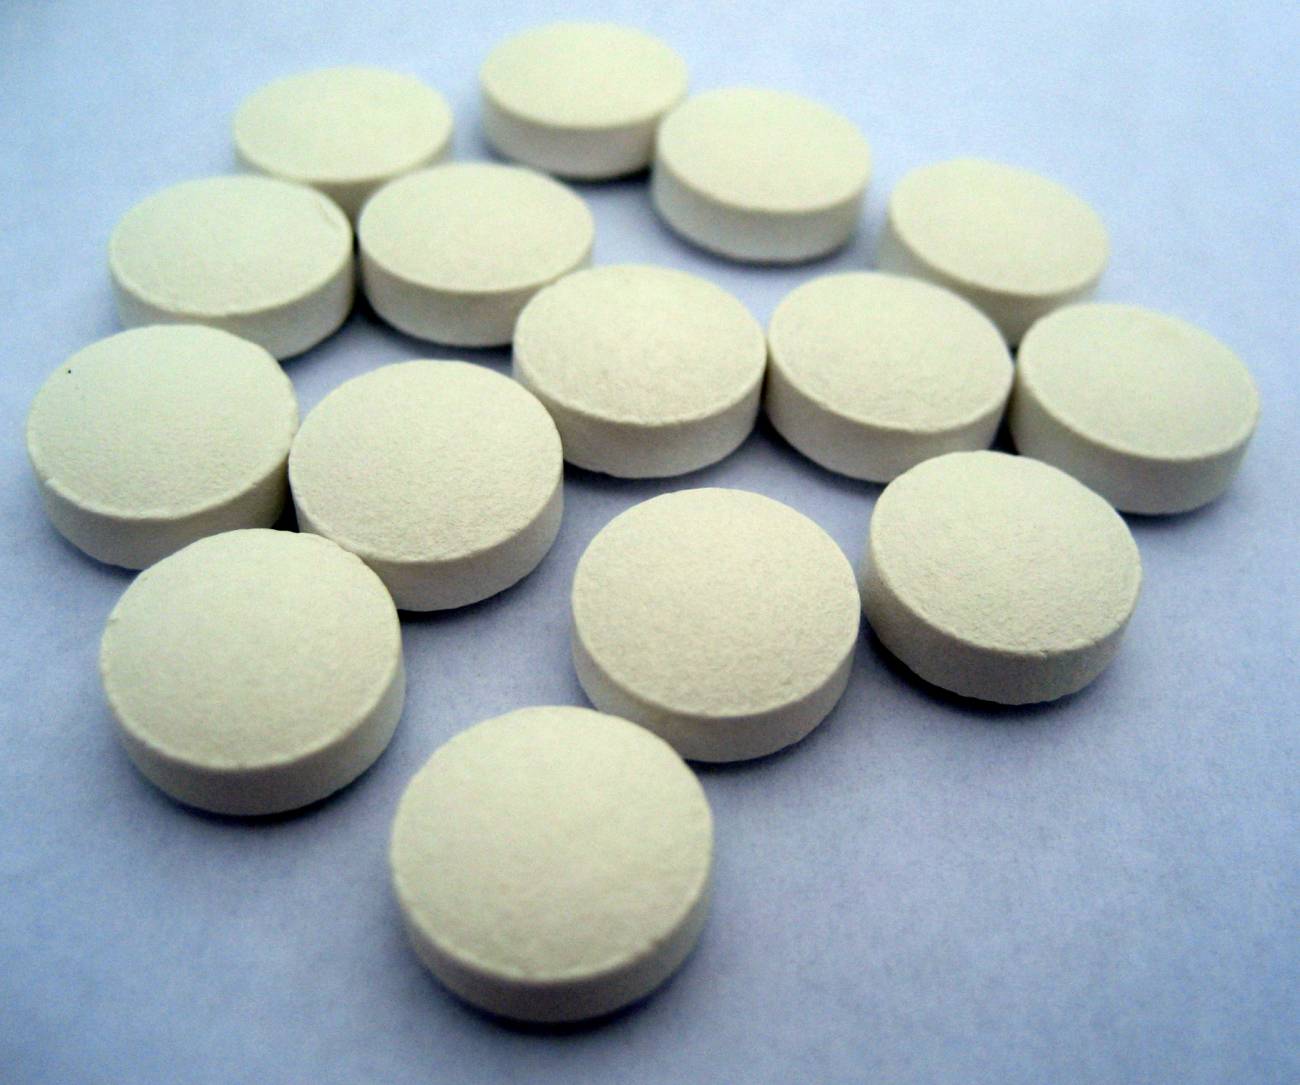 La anfetamina y sus derivados sintéticos son drogas con un gran potencial adictivo. / Dima V